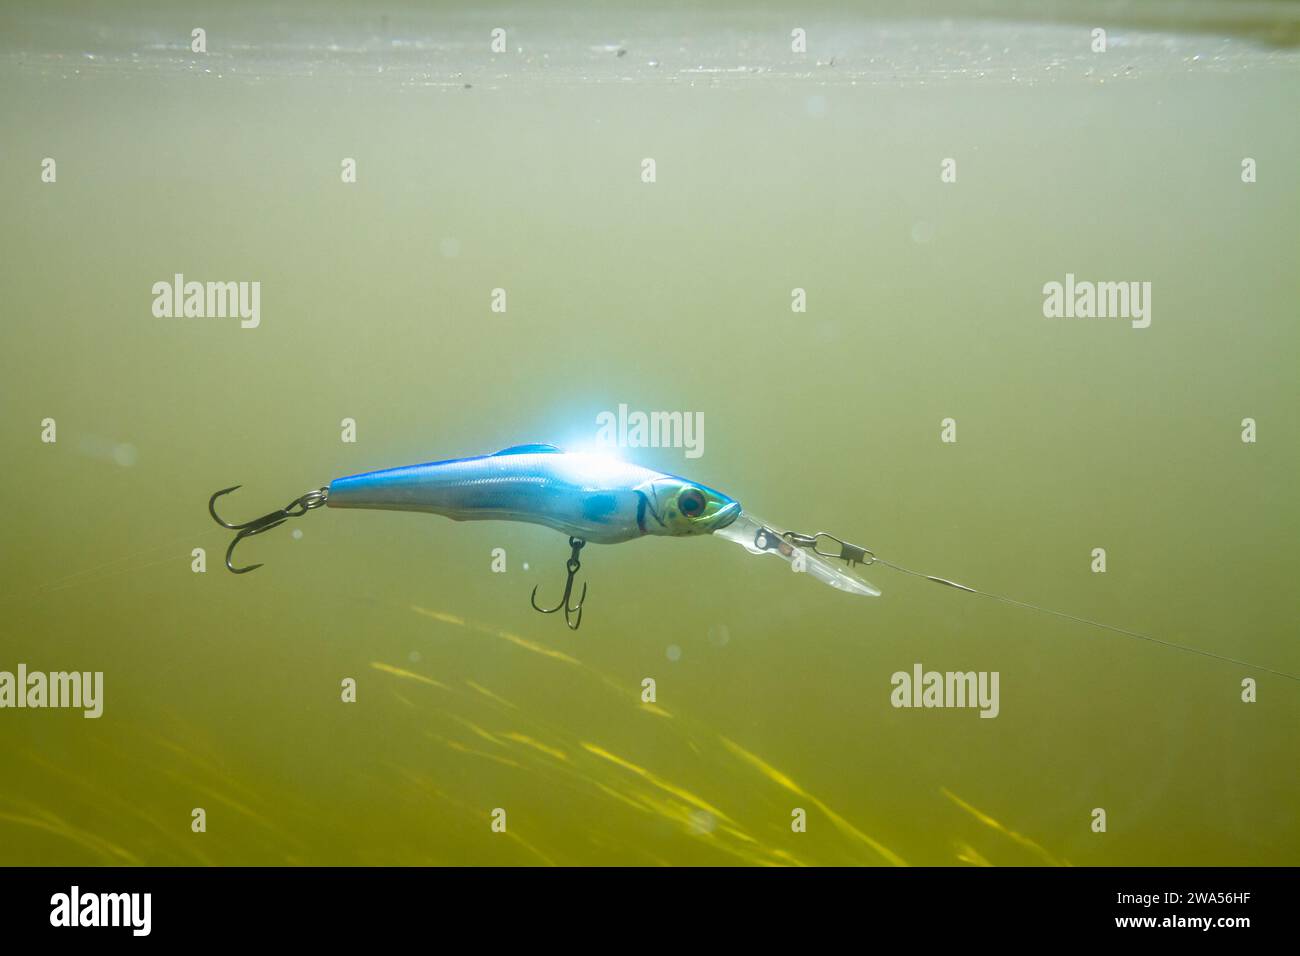 Ein blauer Wobbler, der an einer Angelschnur befestigt ist, schwimmt während des Spinnfischens in der grünlichen Wassersäule des Flusses. Darunter Wasserpflanzen aus grünem Co Stockfoto